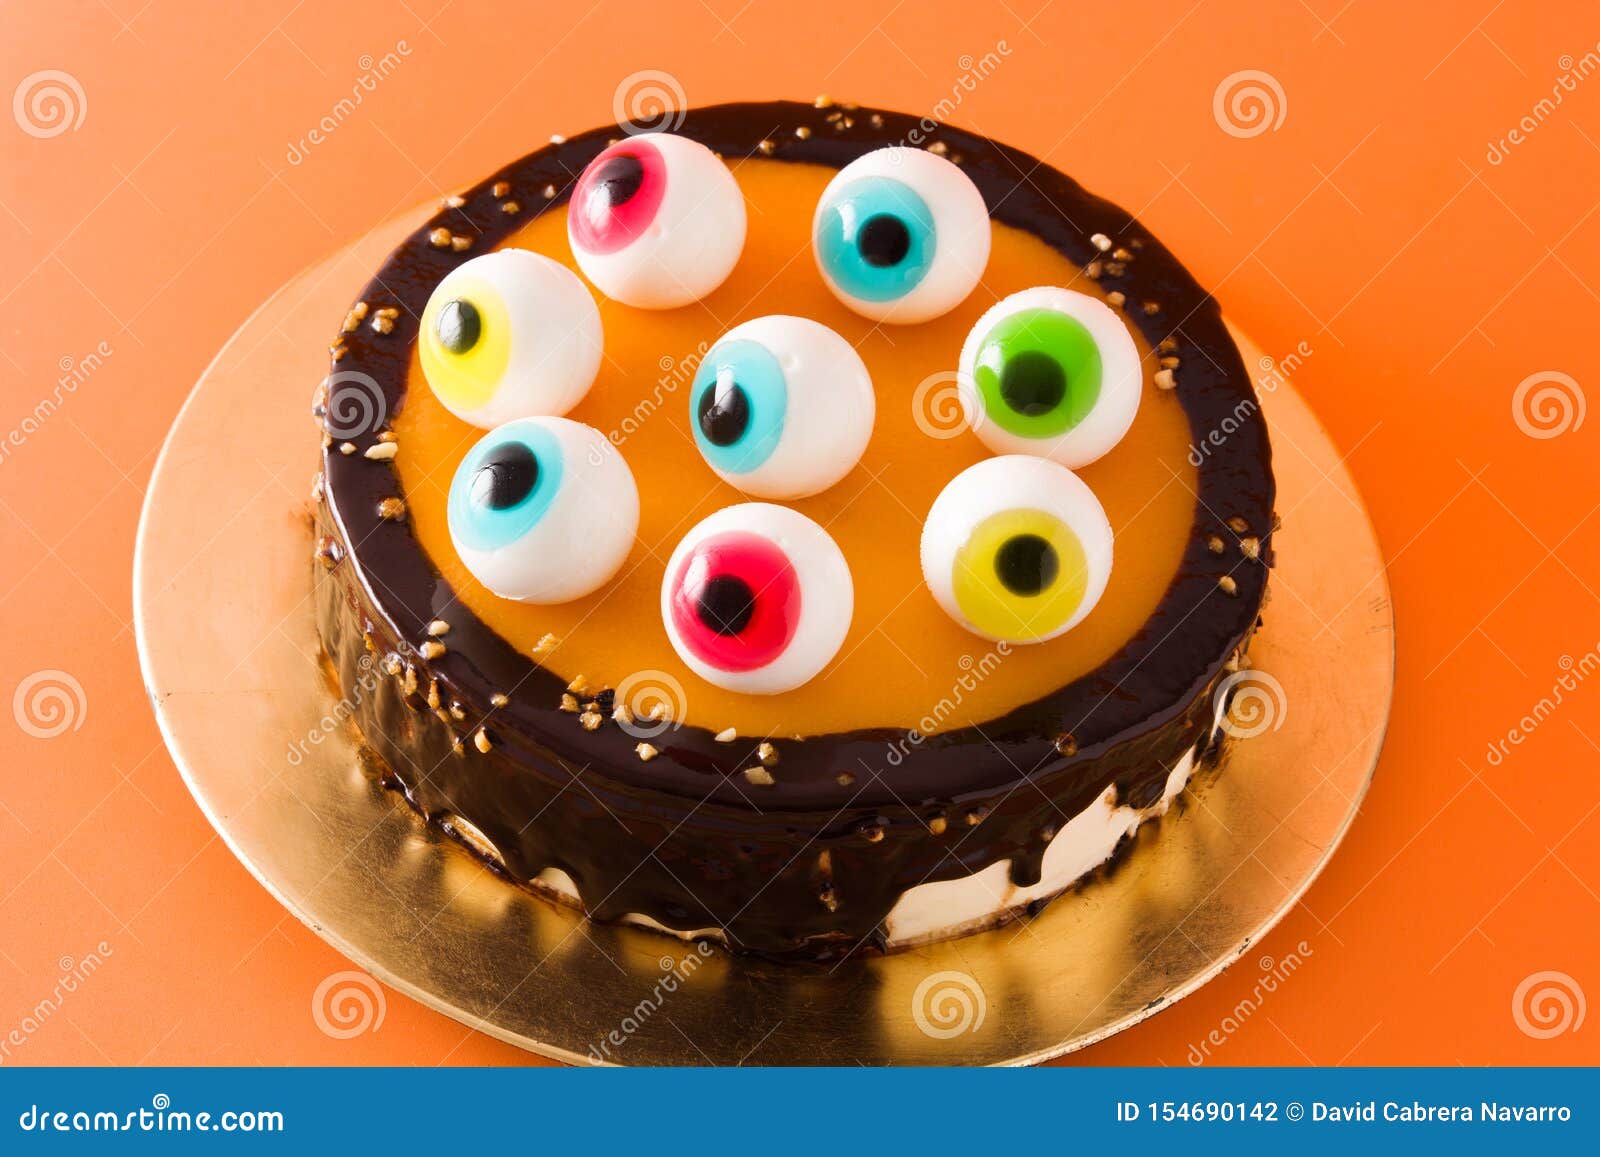 Halloween Cake with Candy Eyes Decoration on Orange Background ...